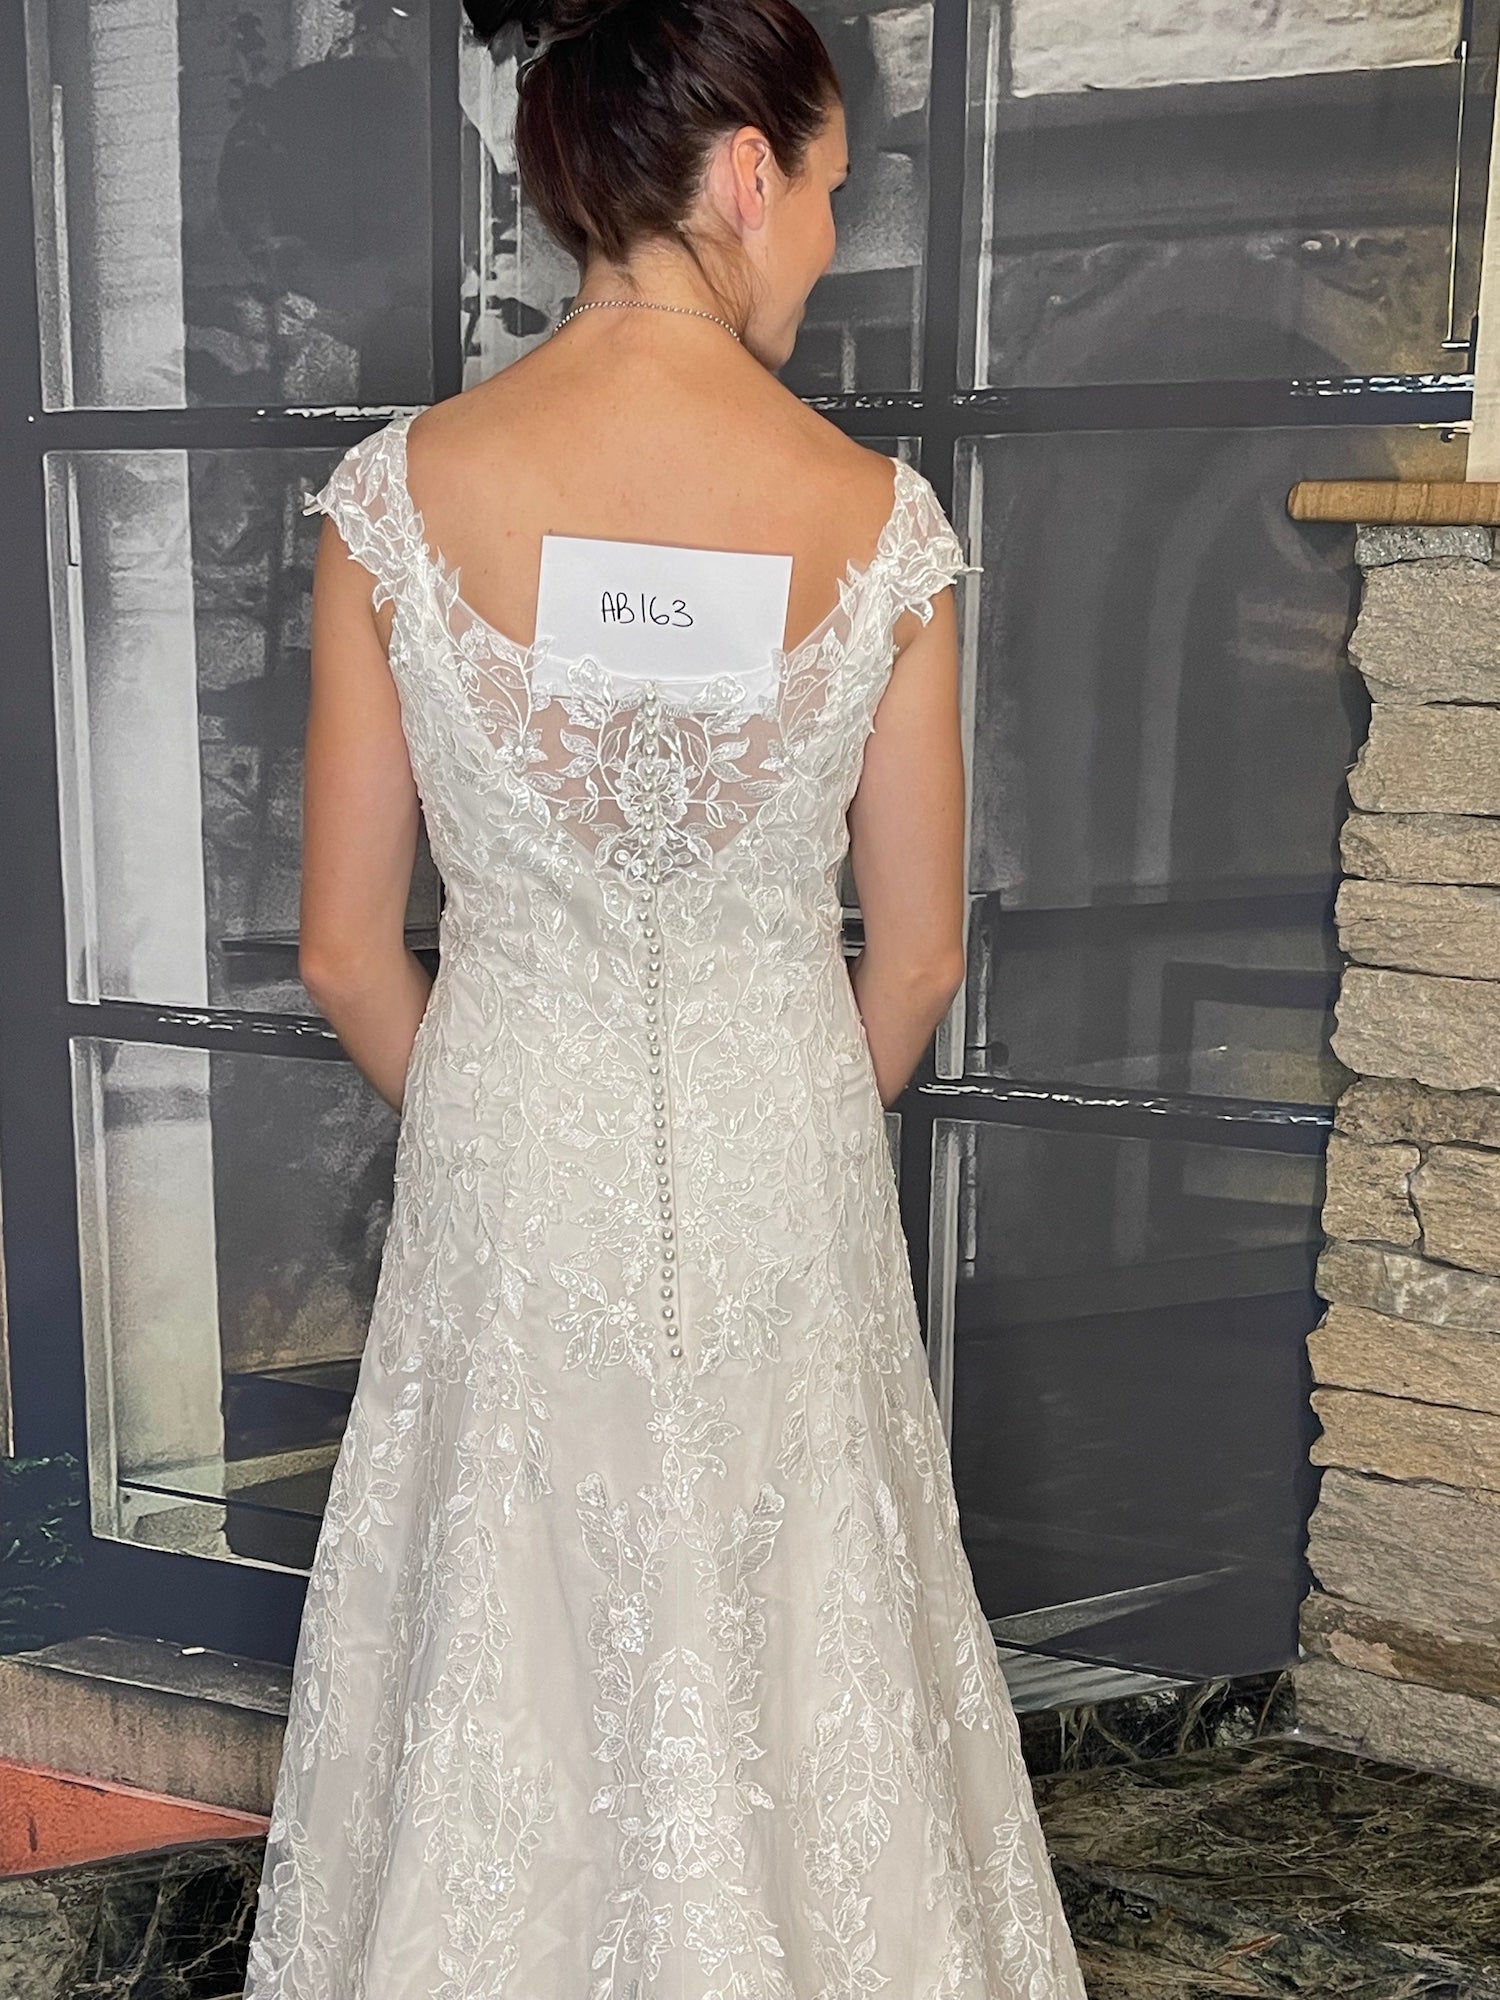 *NEW* Designer Wedding Gown - #AB163